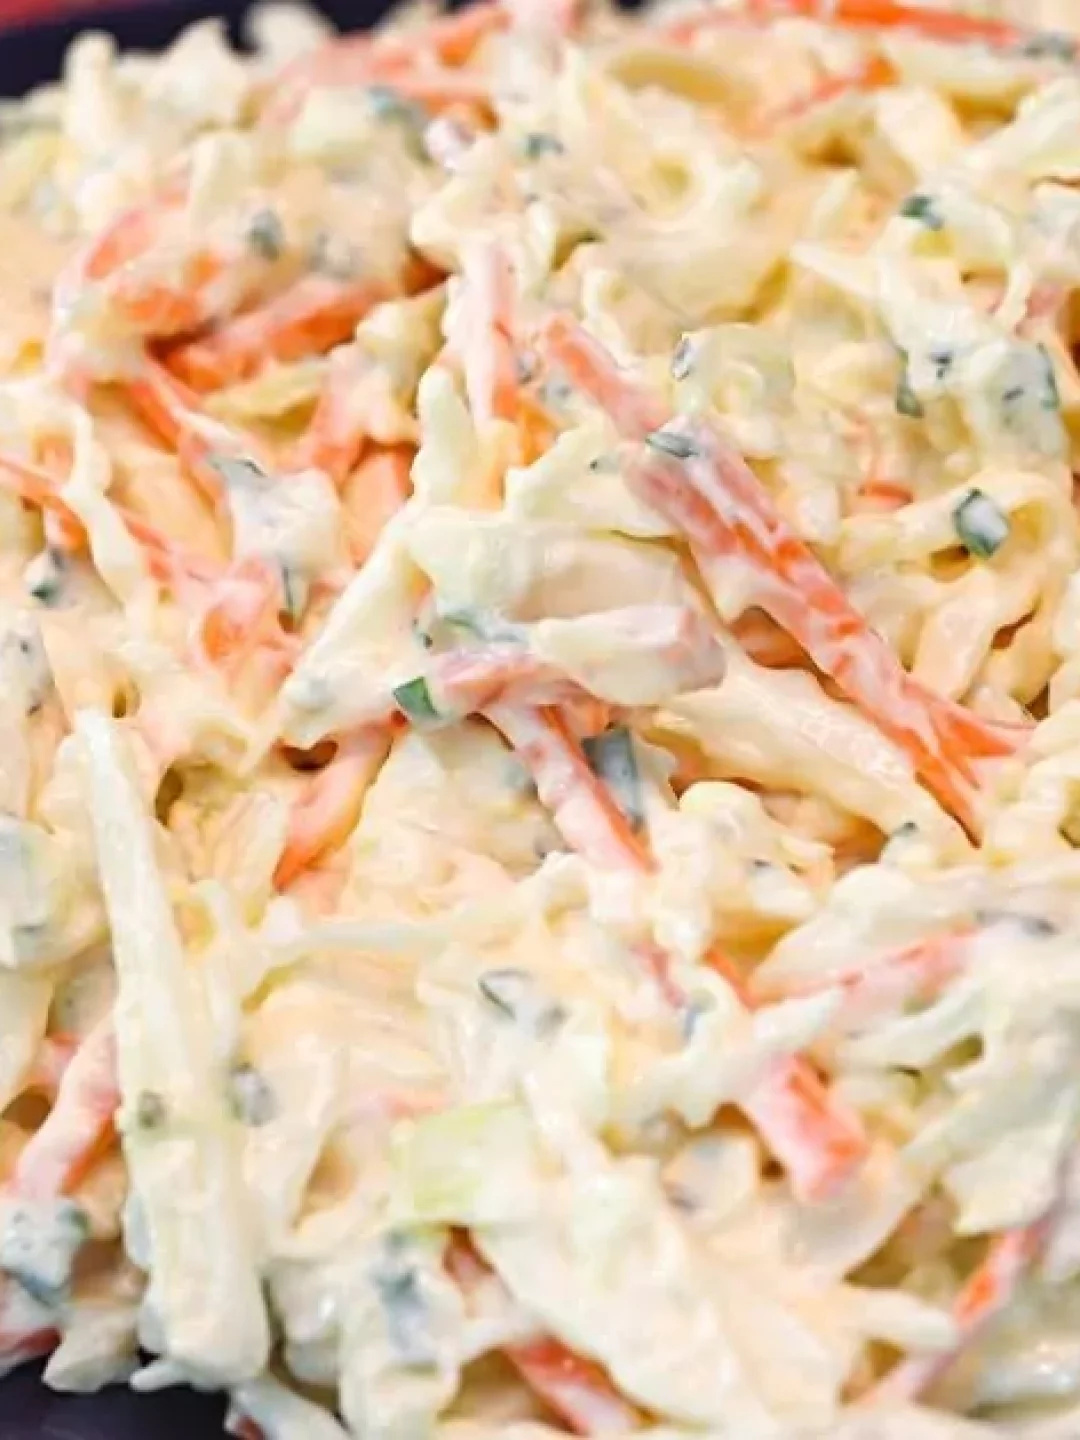 Saiba Como Fazer Salada de Repolho com Maionese Super Deliciosa